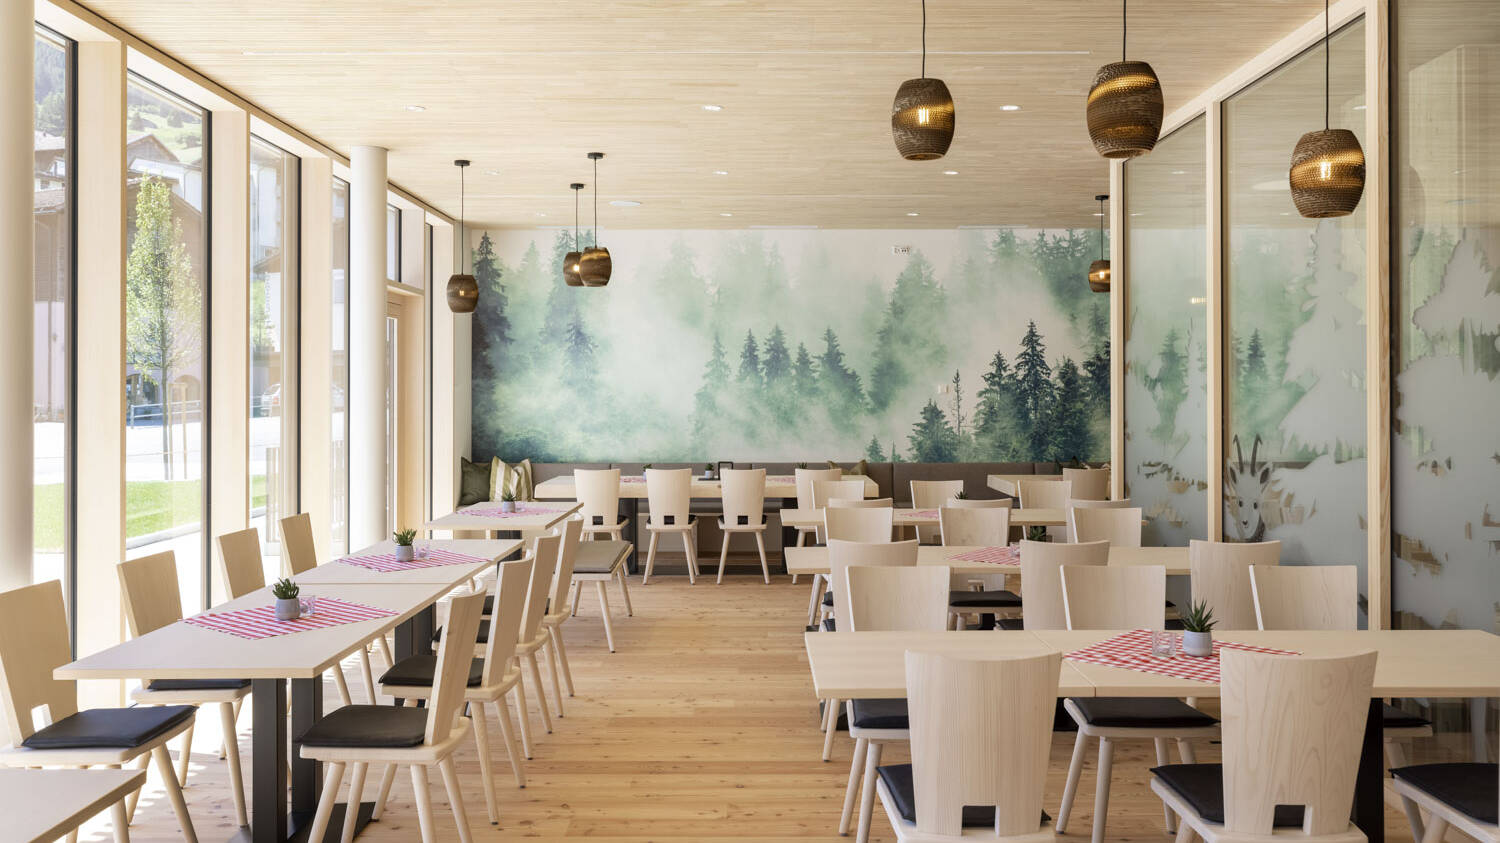 Die Wände des Speisesaals sind durch ein Waldprint geprägt, dass zusätzlich zu der Echtholzdecke aus Weißtanne ein Stück Natur ins Innere bringt. 